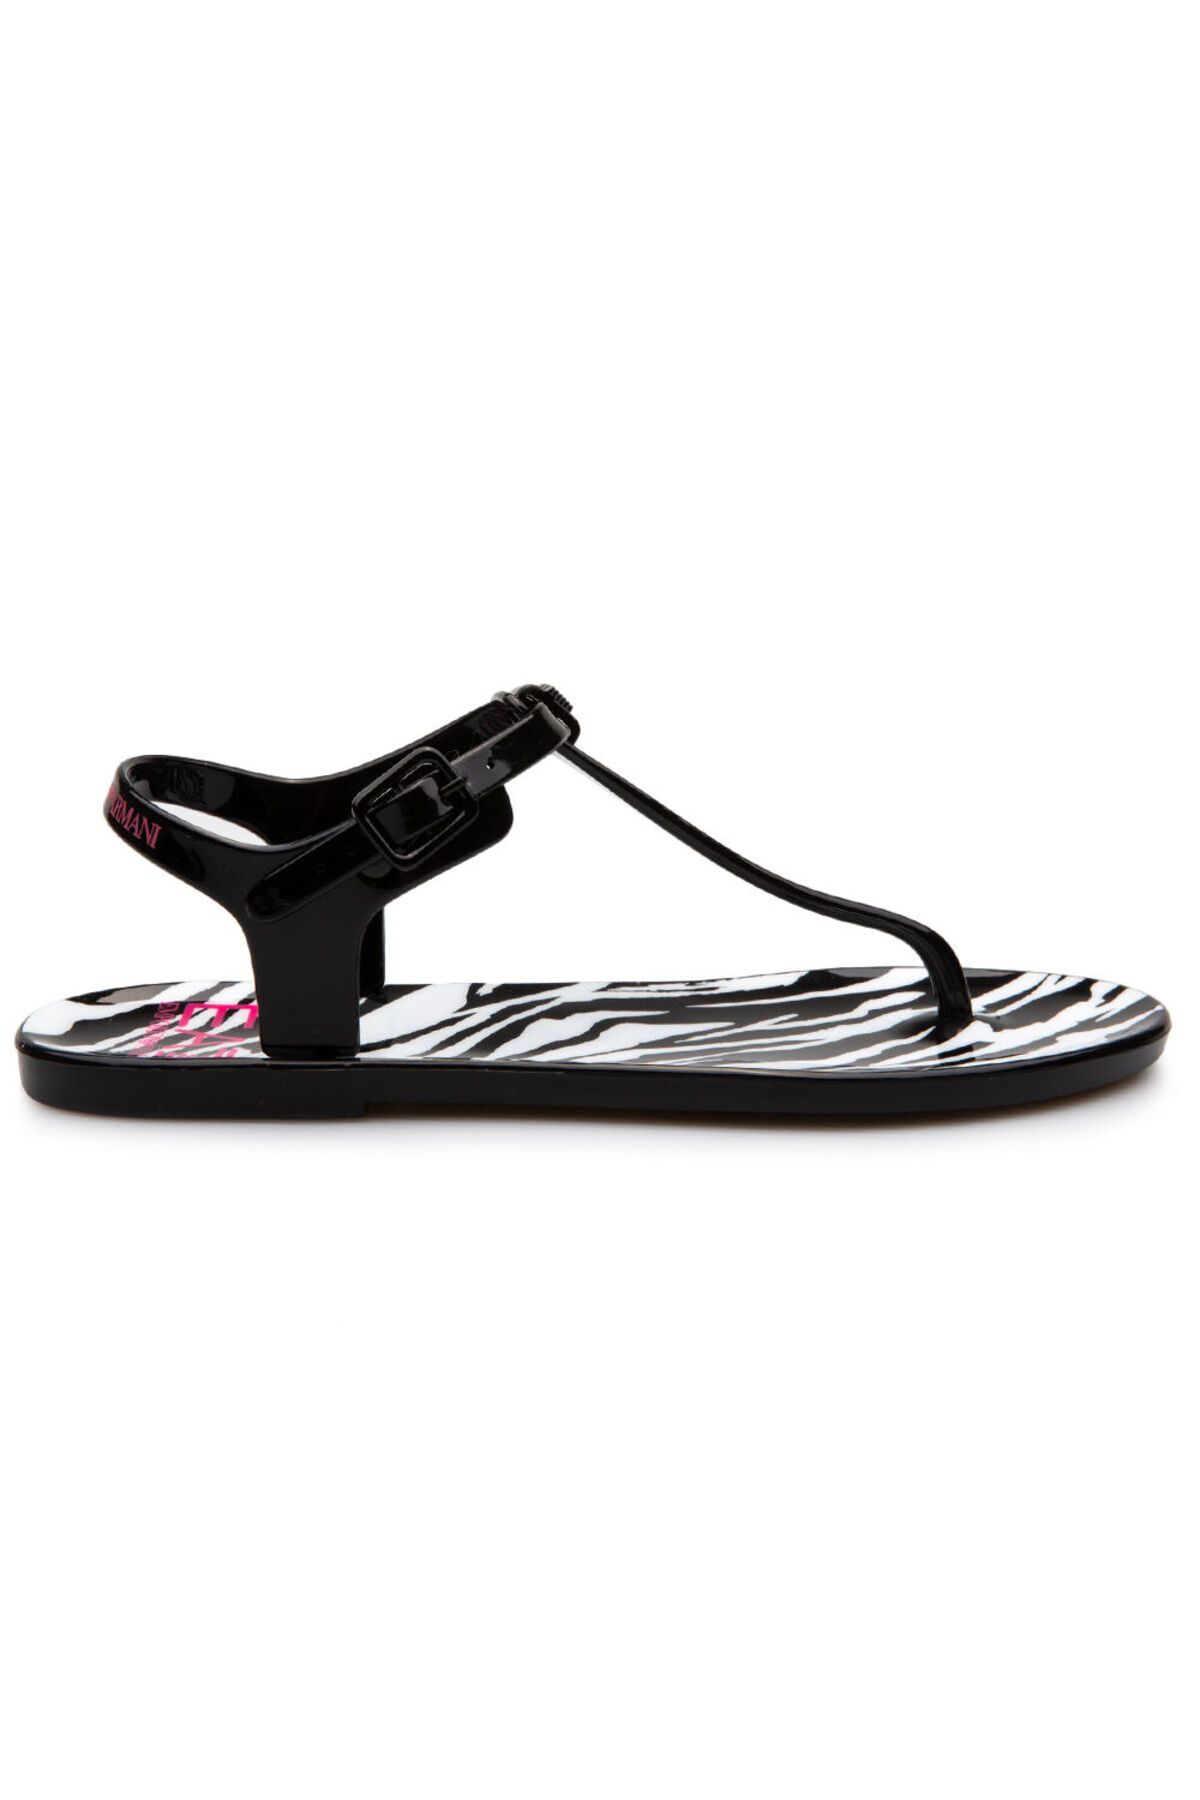 Emporio Armani Kadın Sandalet Xfq005-xk206-q721